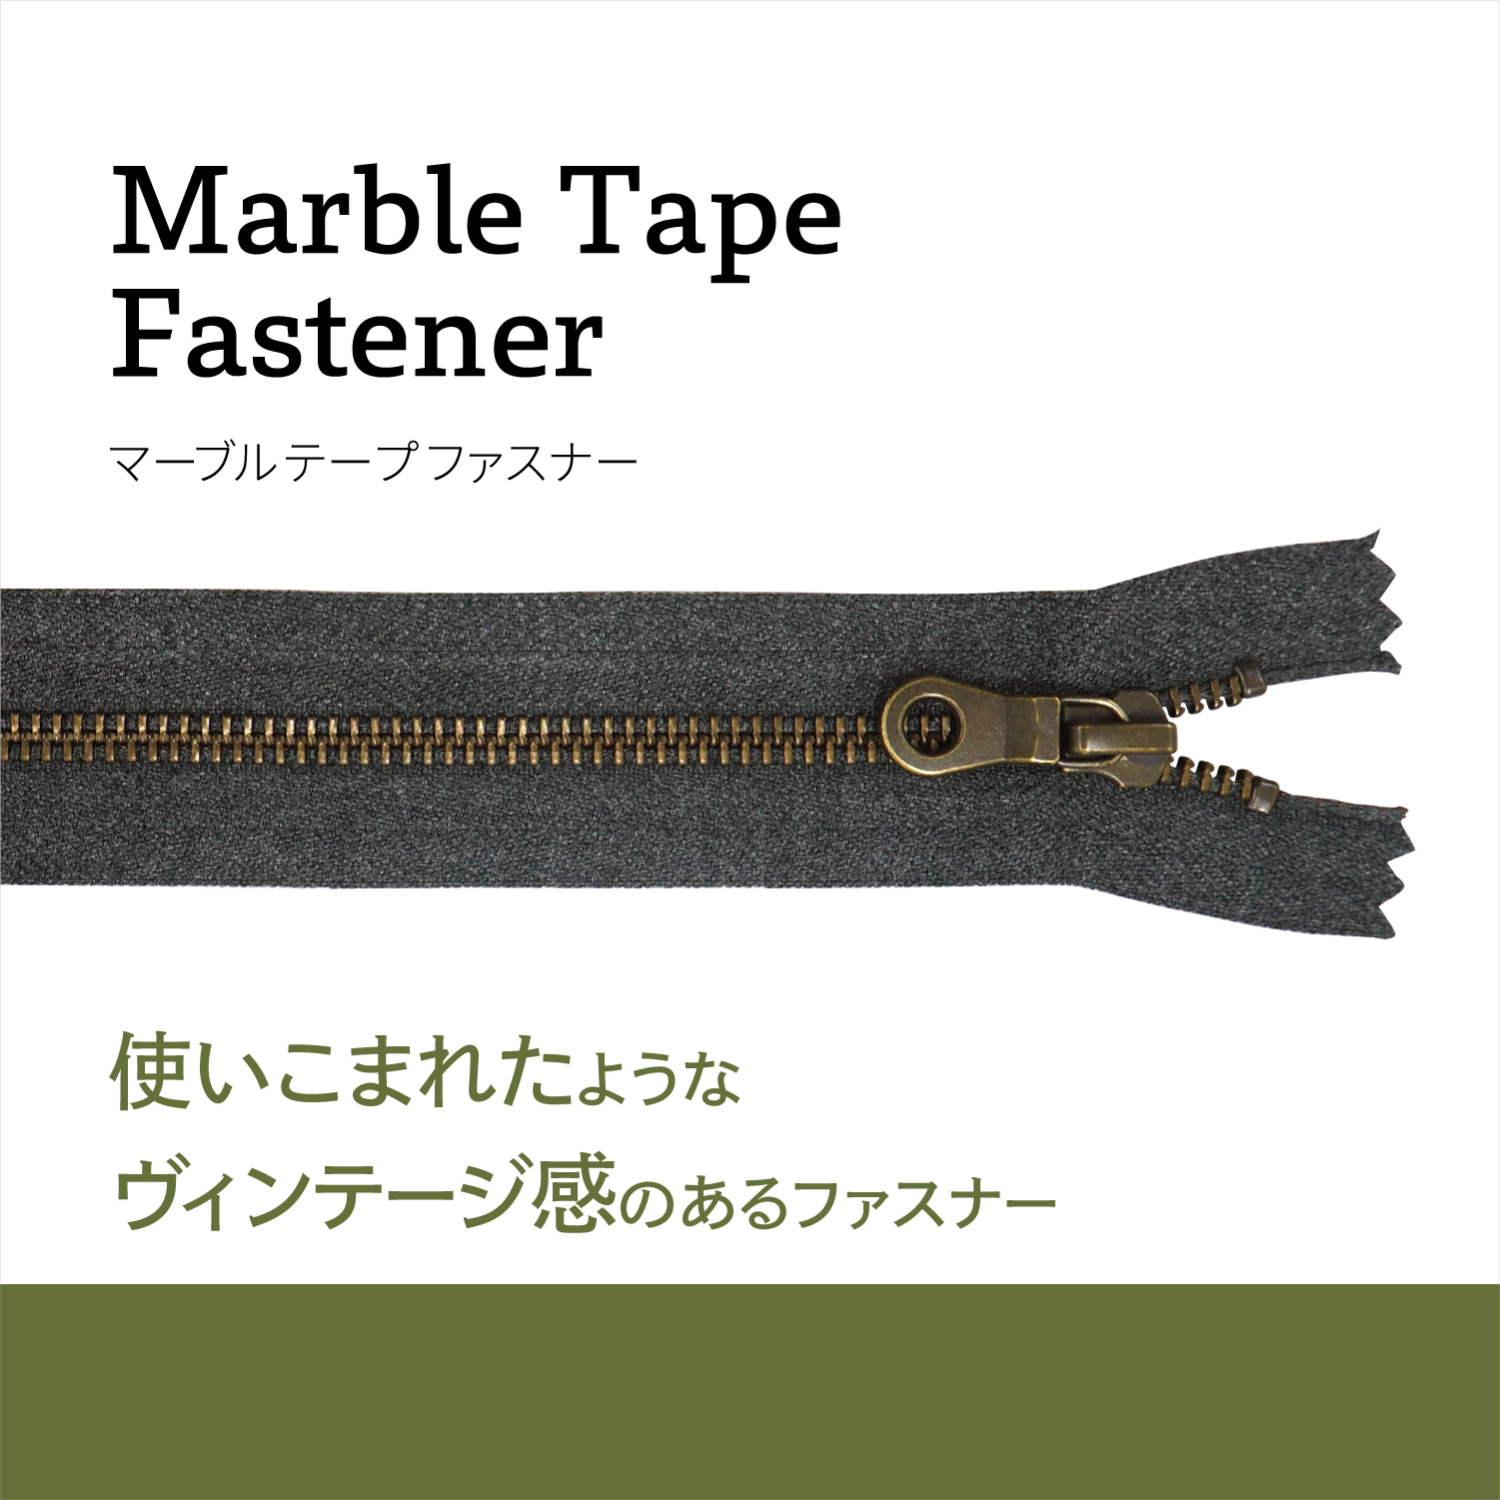 MarbleTapeFastener-1.jpg